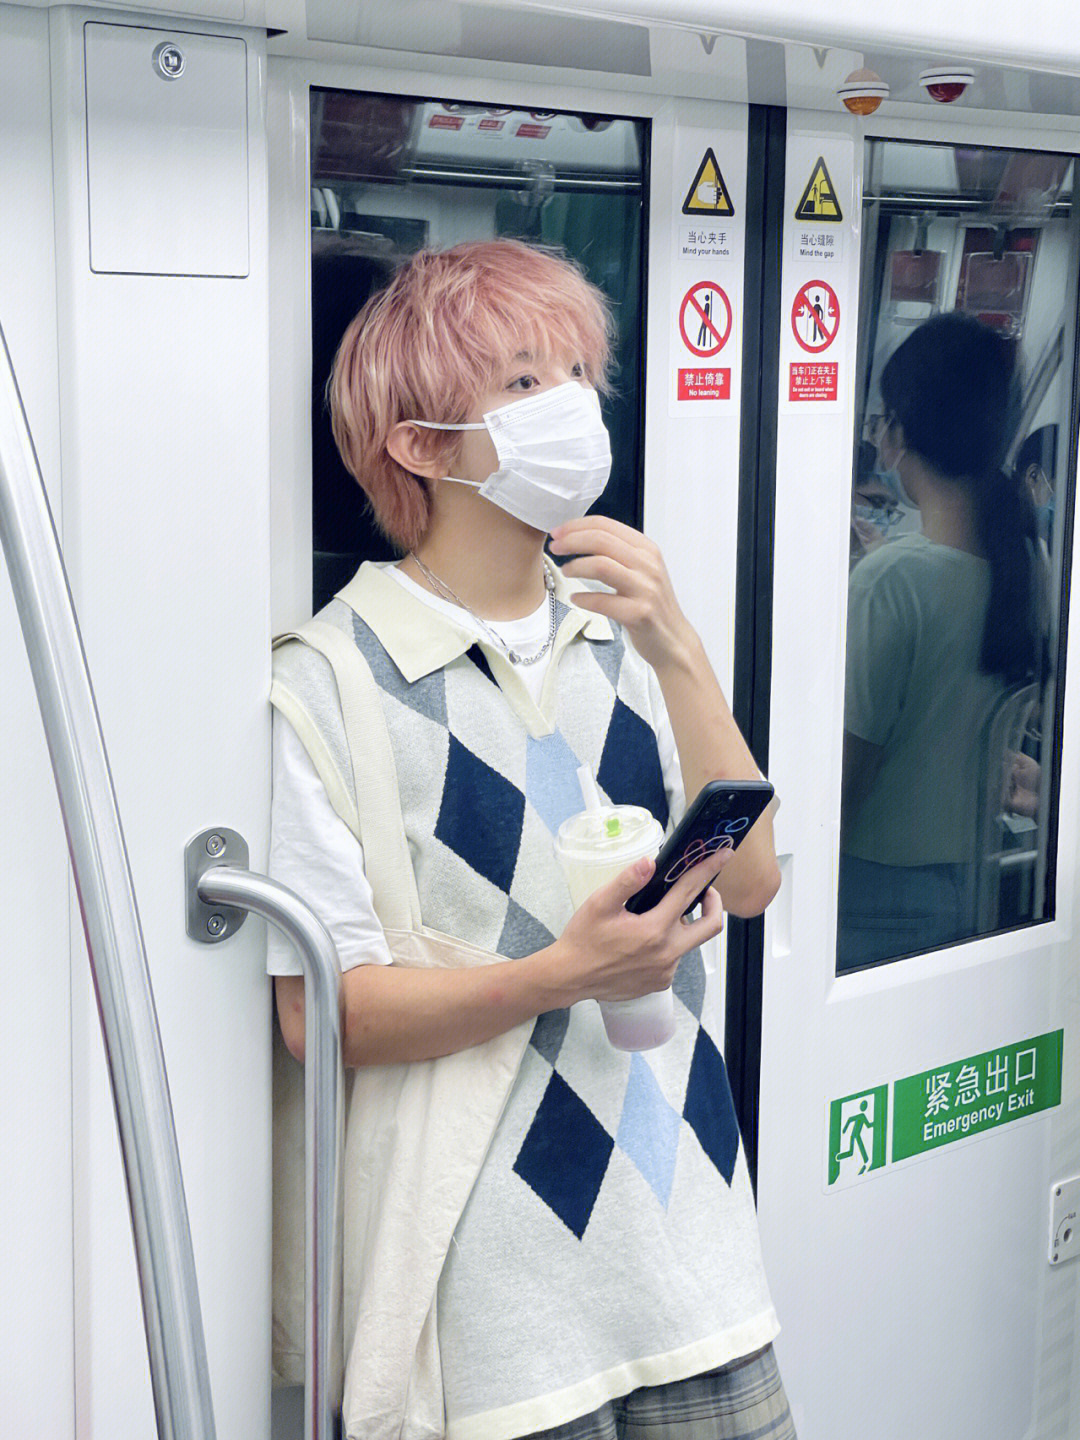 杭州地铁上偶遇的帅哥